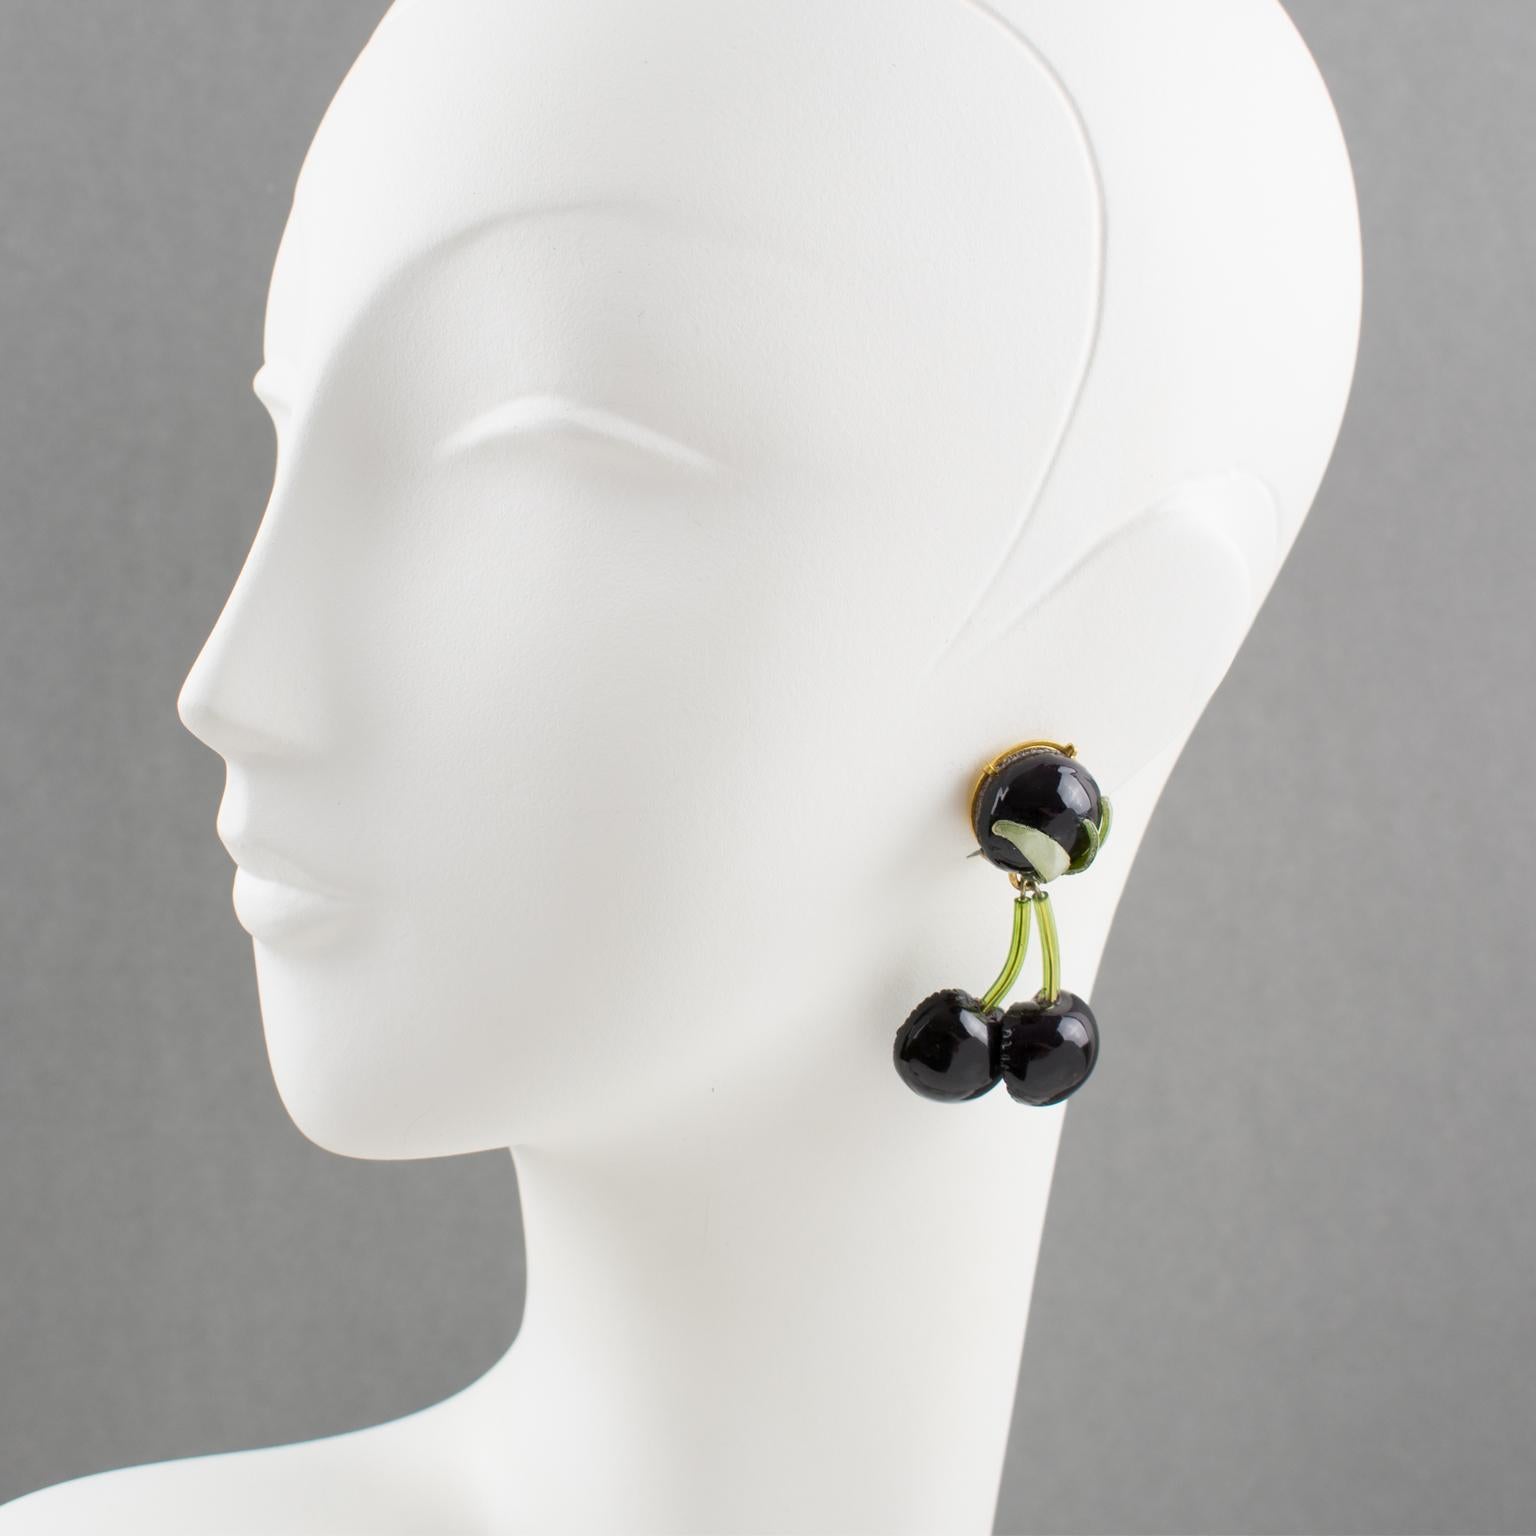 Diese hübschen Ohrringe aus Kunstharz wurden von Cilea Paris entworfen, dem Unternehmen, das für die französische Schmuckdesignerin Francoise Montague arbeitet und ihre Kunstharz-Kollektionen herstellt. Die lange, baumelnde Form zeigt dimensionale